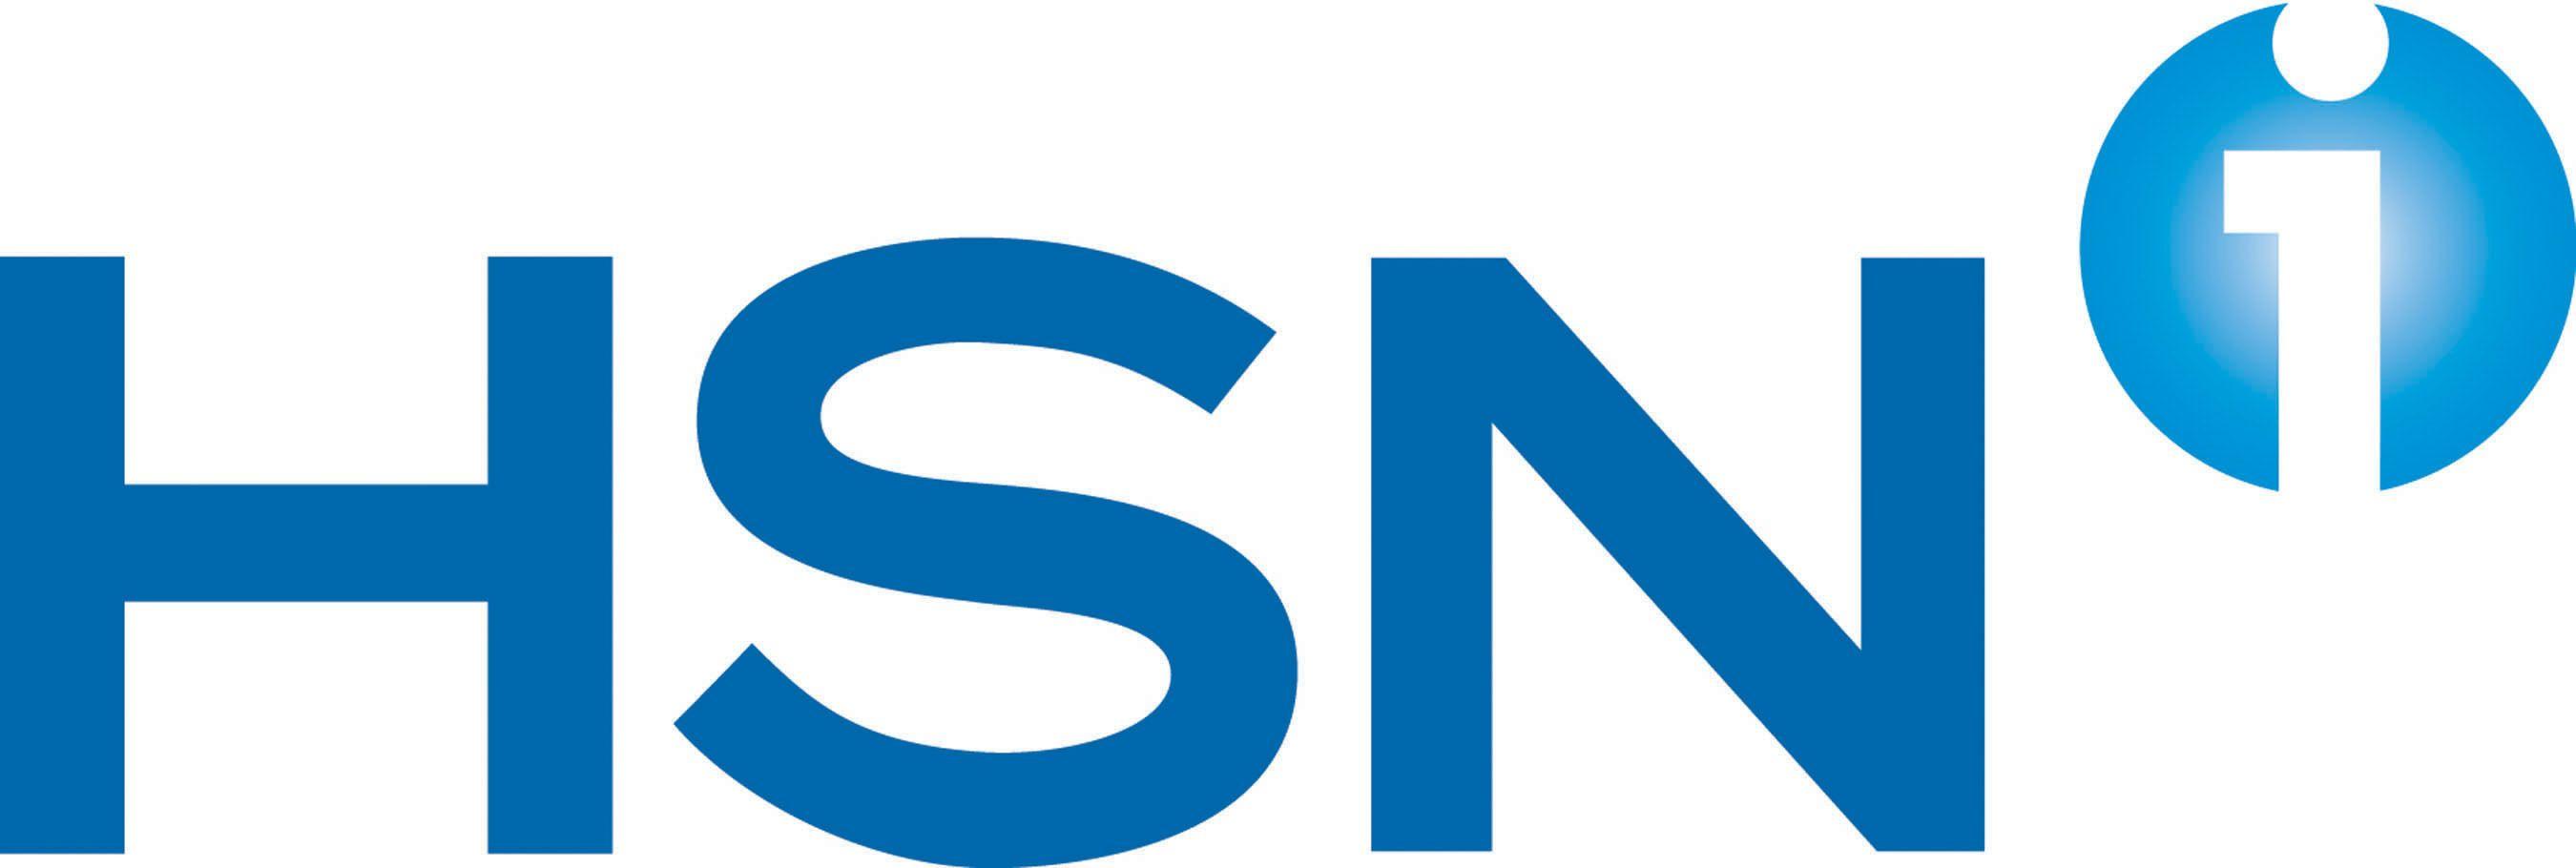 HSN Logo - Hsn Logos